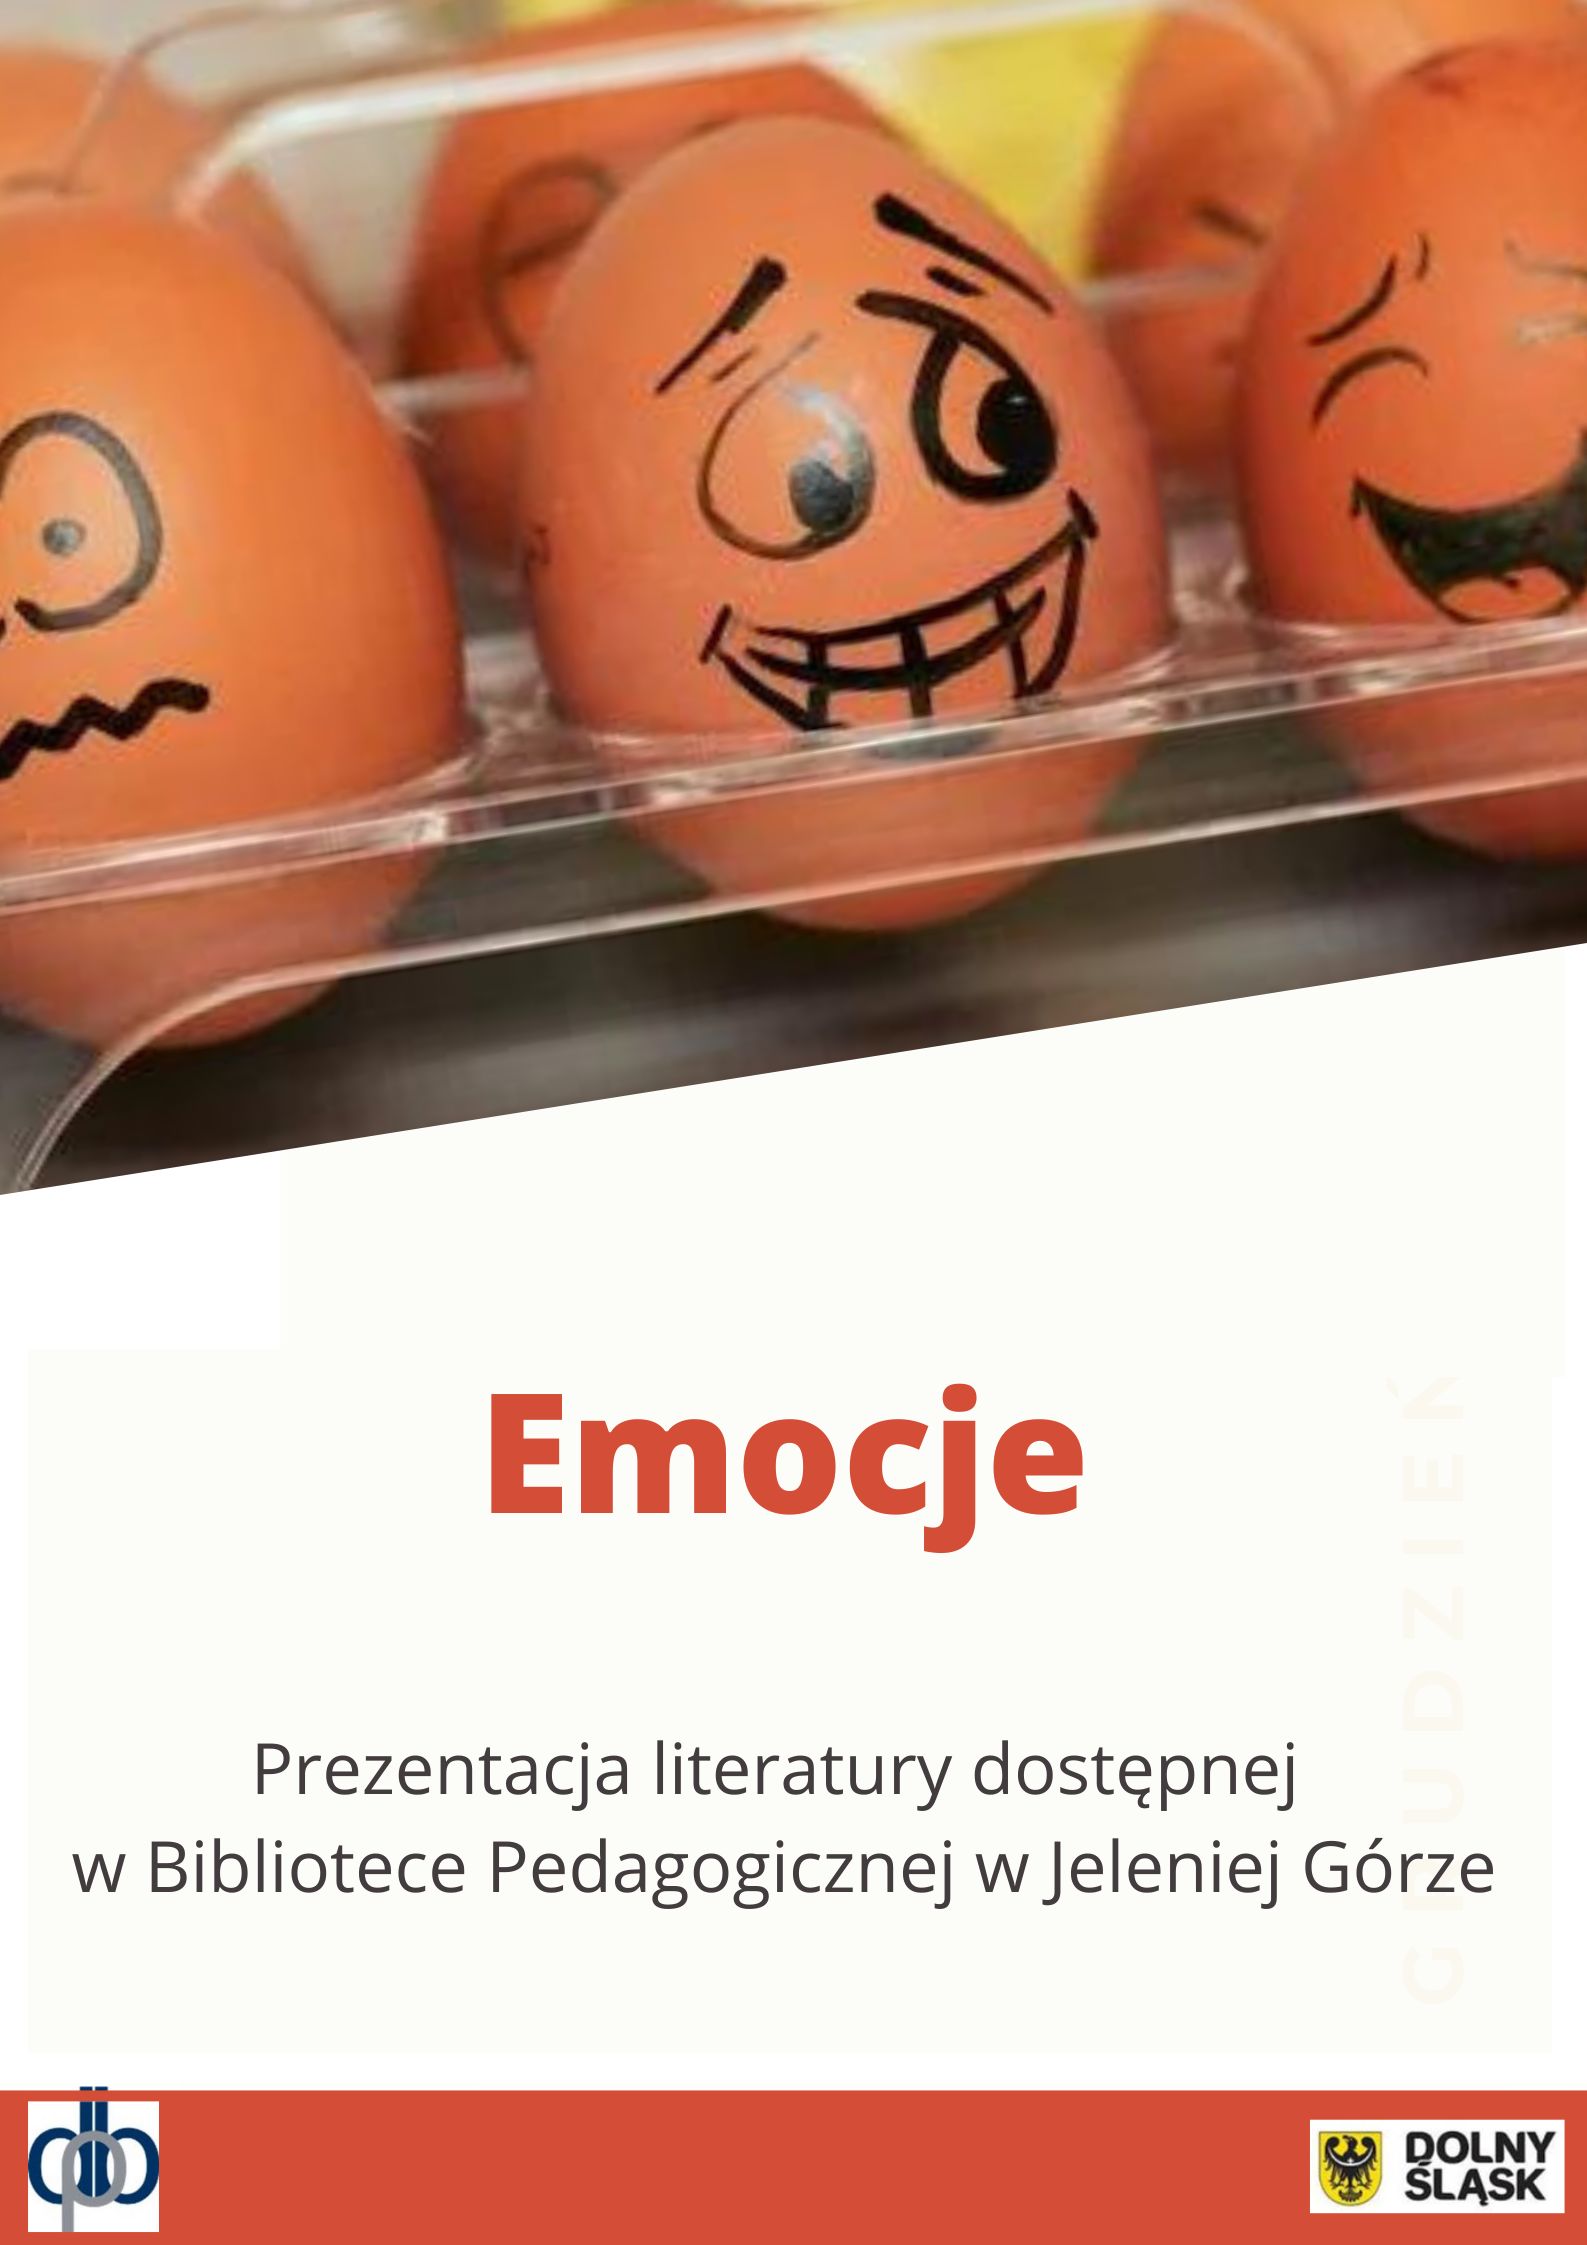 Plakat prostokątny w pionie: u góry kolorowa ilustracja przedstawiająca jajka z namalowanymi buźkami; poniżej napis: Emocje. Prezentacja literatury dostępnej w Bibliotece Pedagogicznej w Jeleniej Górze; na dole na beżowym pasku logo DBP i UMWD